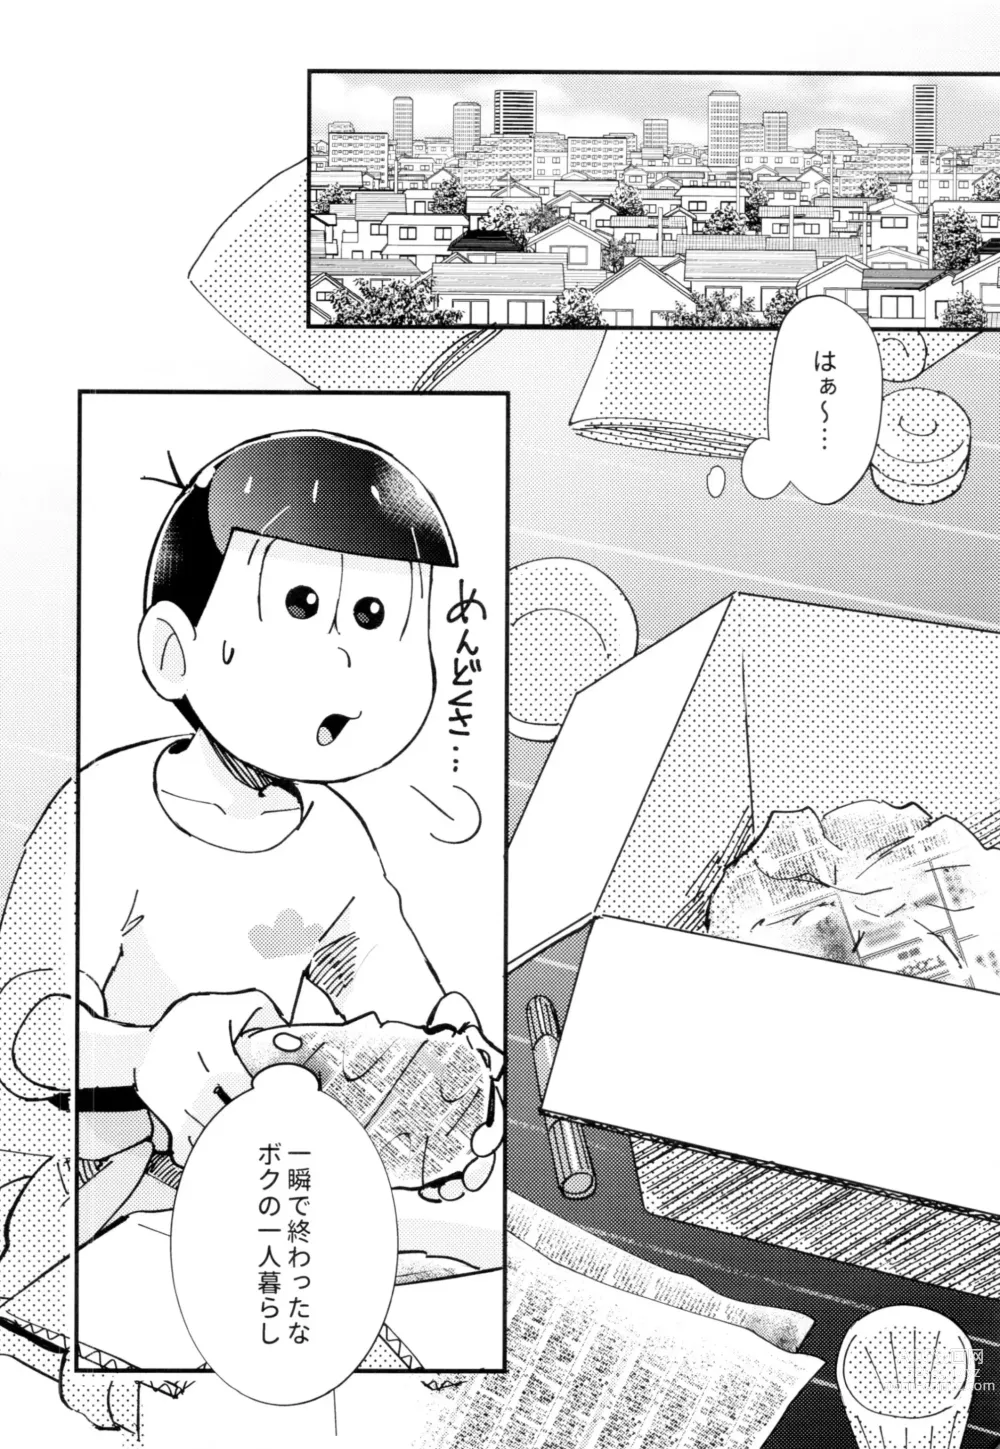 Page 4 of doujinshi 2-haku 3-kka, Kimi to Sakurasaku Apart de